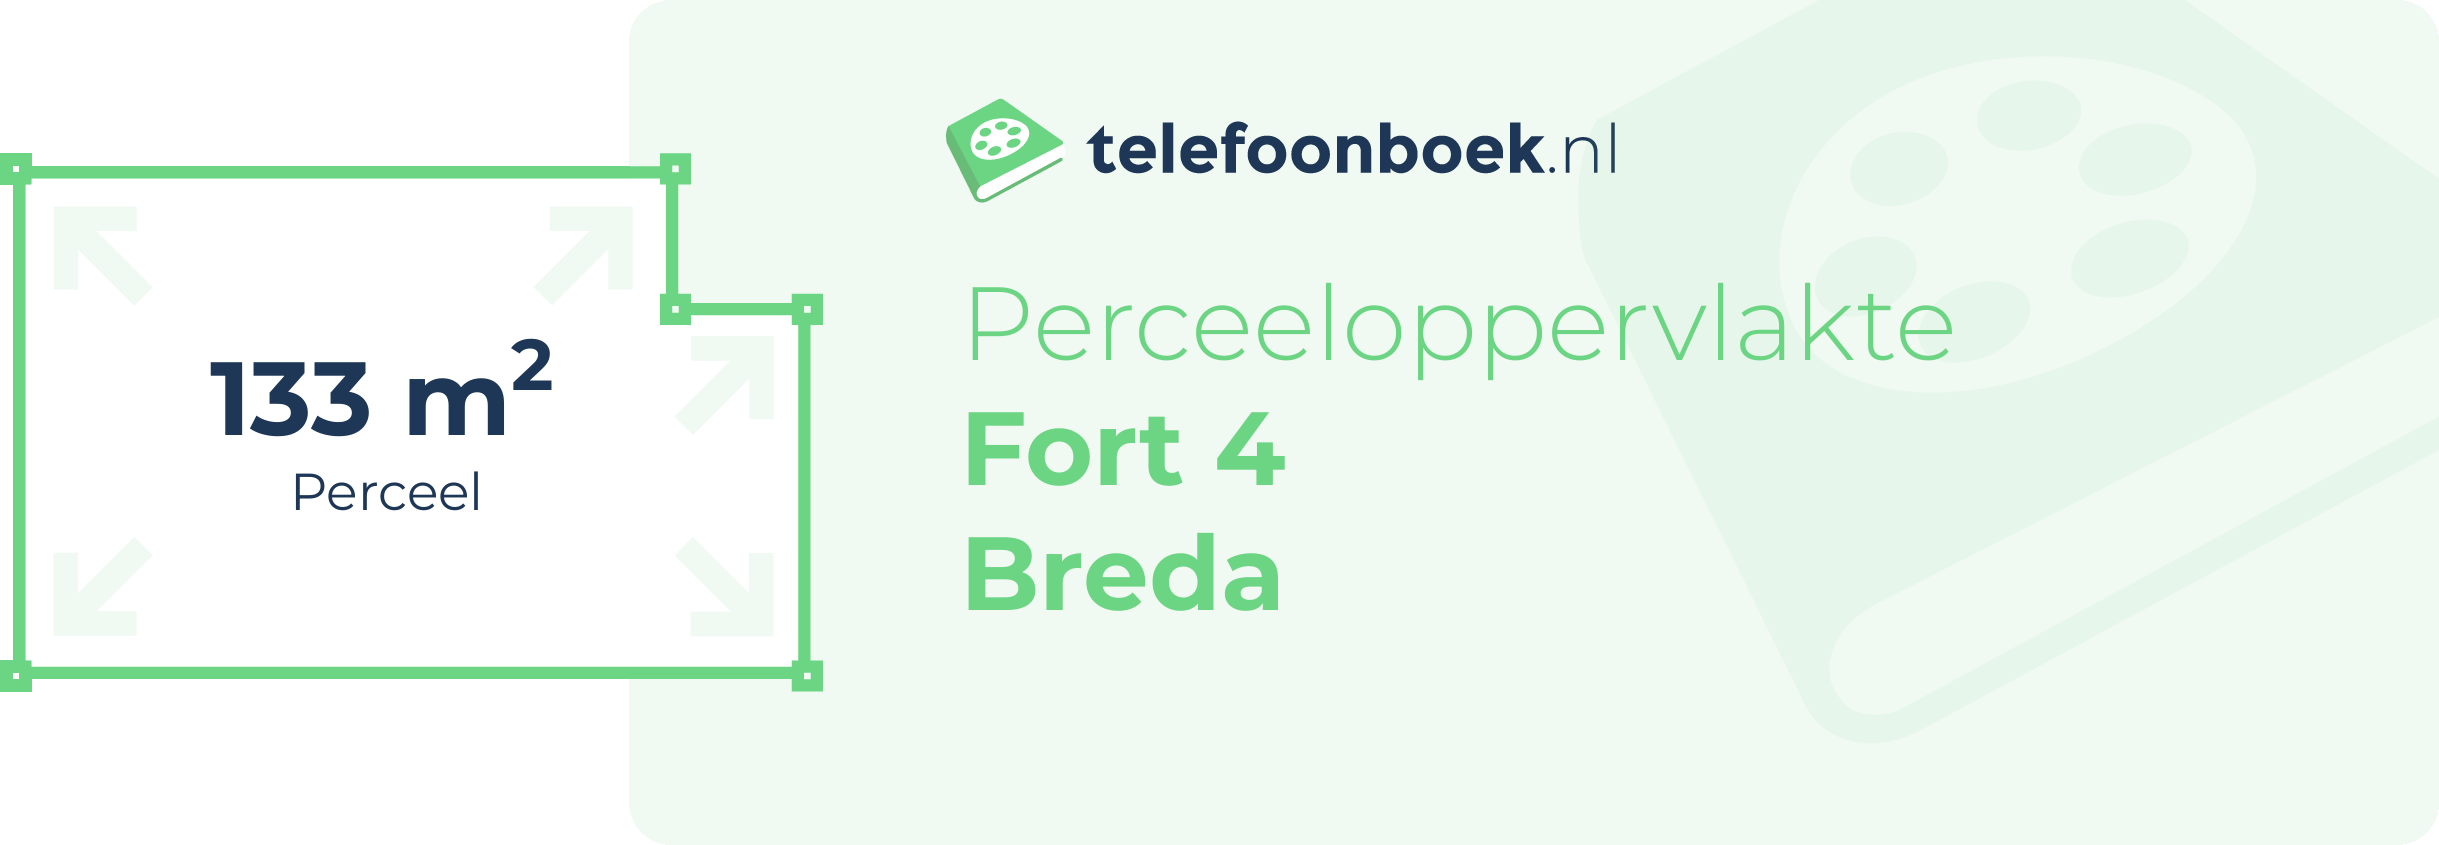 Perceeloppervlakte Fort 4 Breda